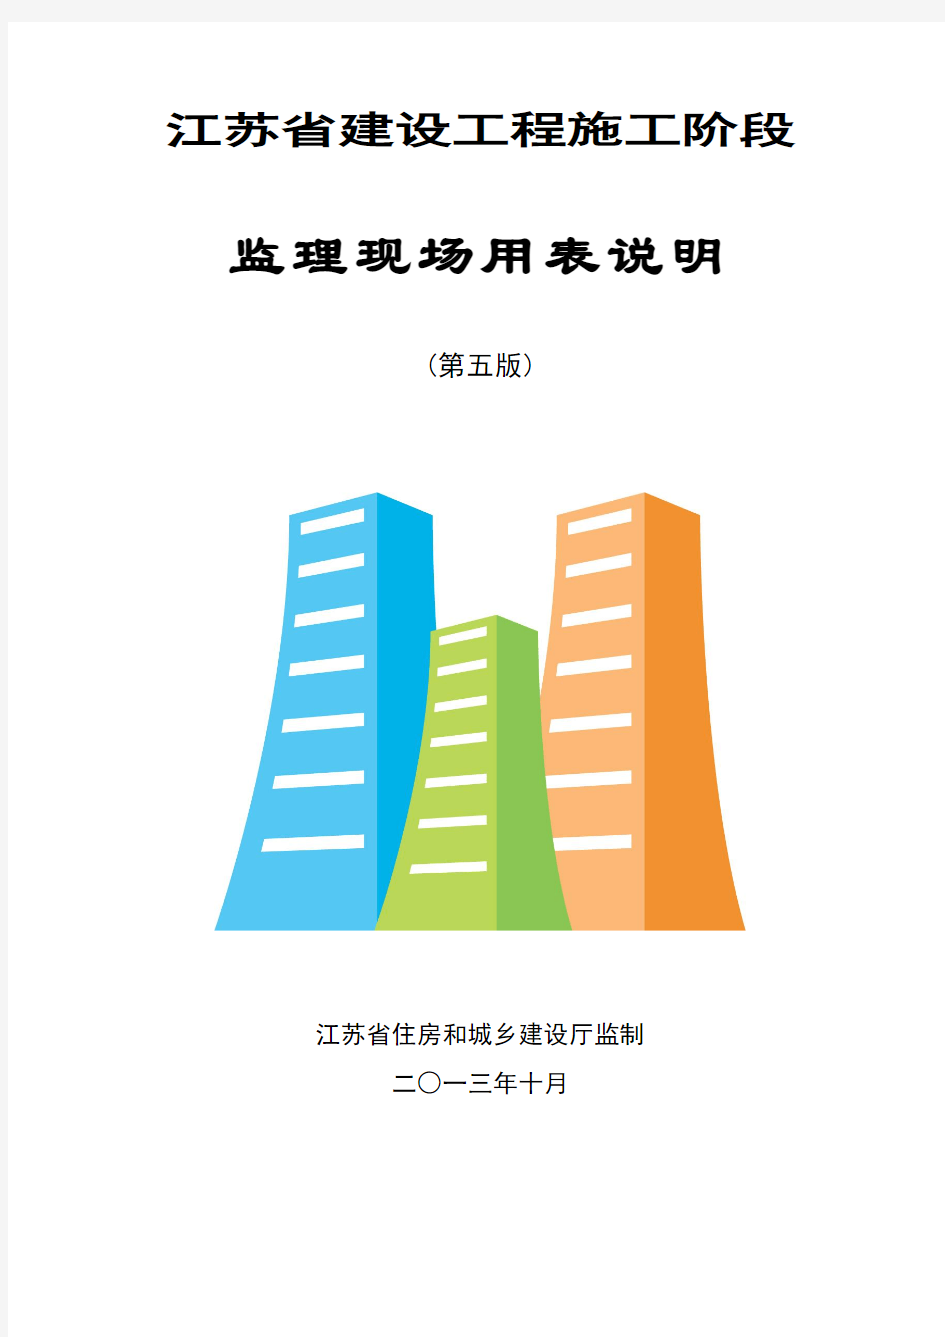 江苏省建设工程施工阶段监理现场用表说明(第五版)